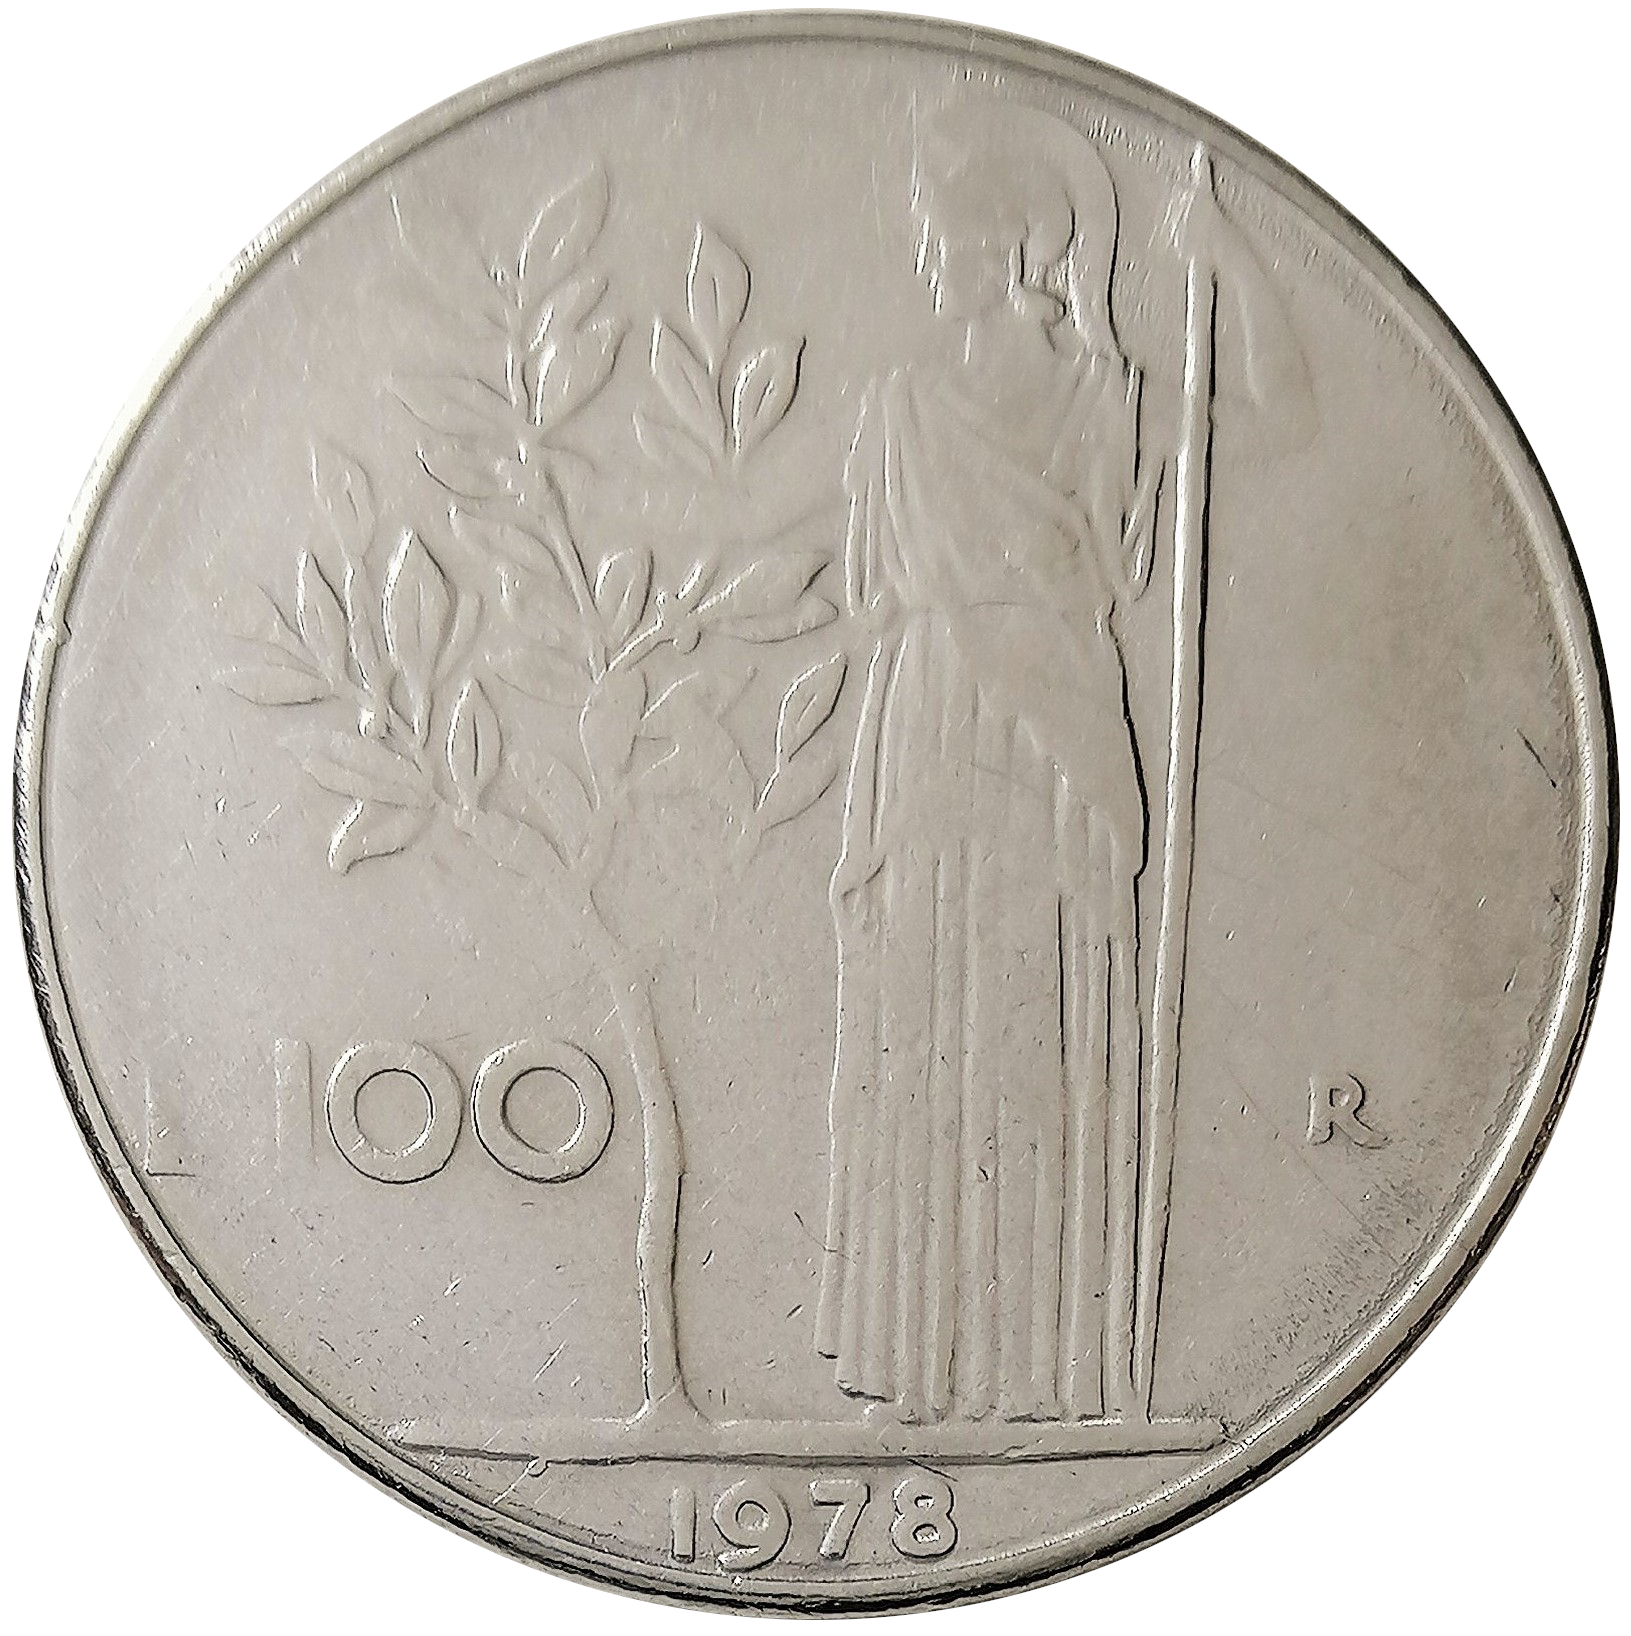 sena coins